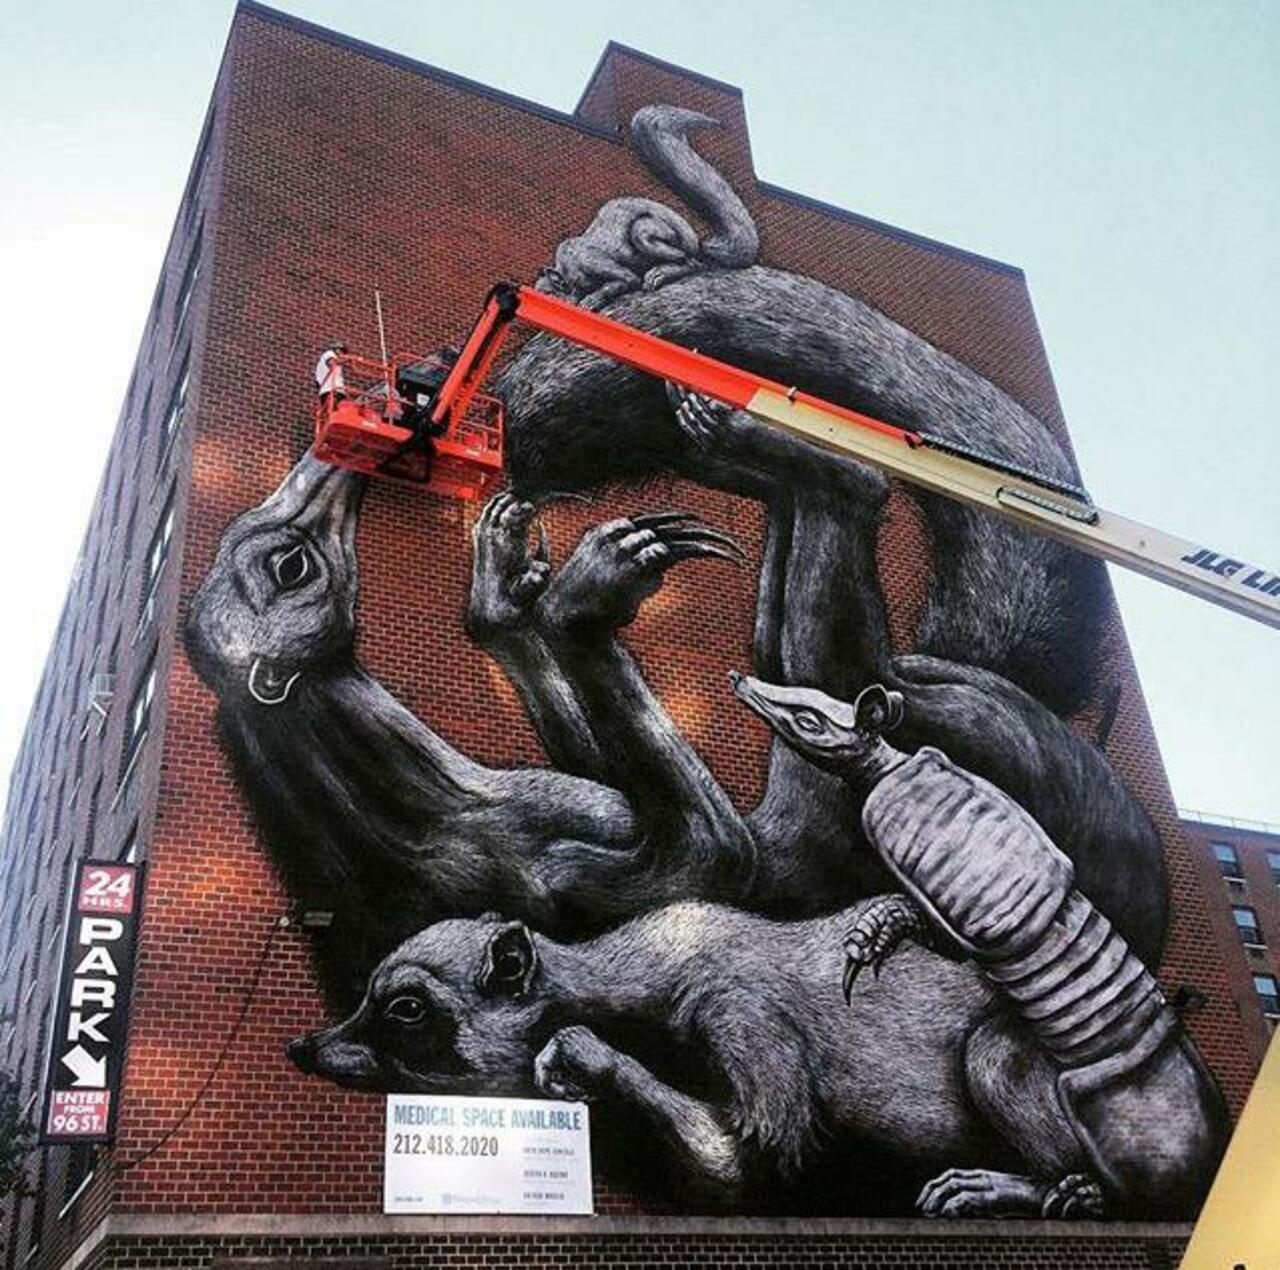 RT belilac "Street Art in progress by ROA in NYC

#art #graffiti #mural #streetart http://t.co/RIw6r5y36k"